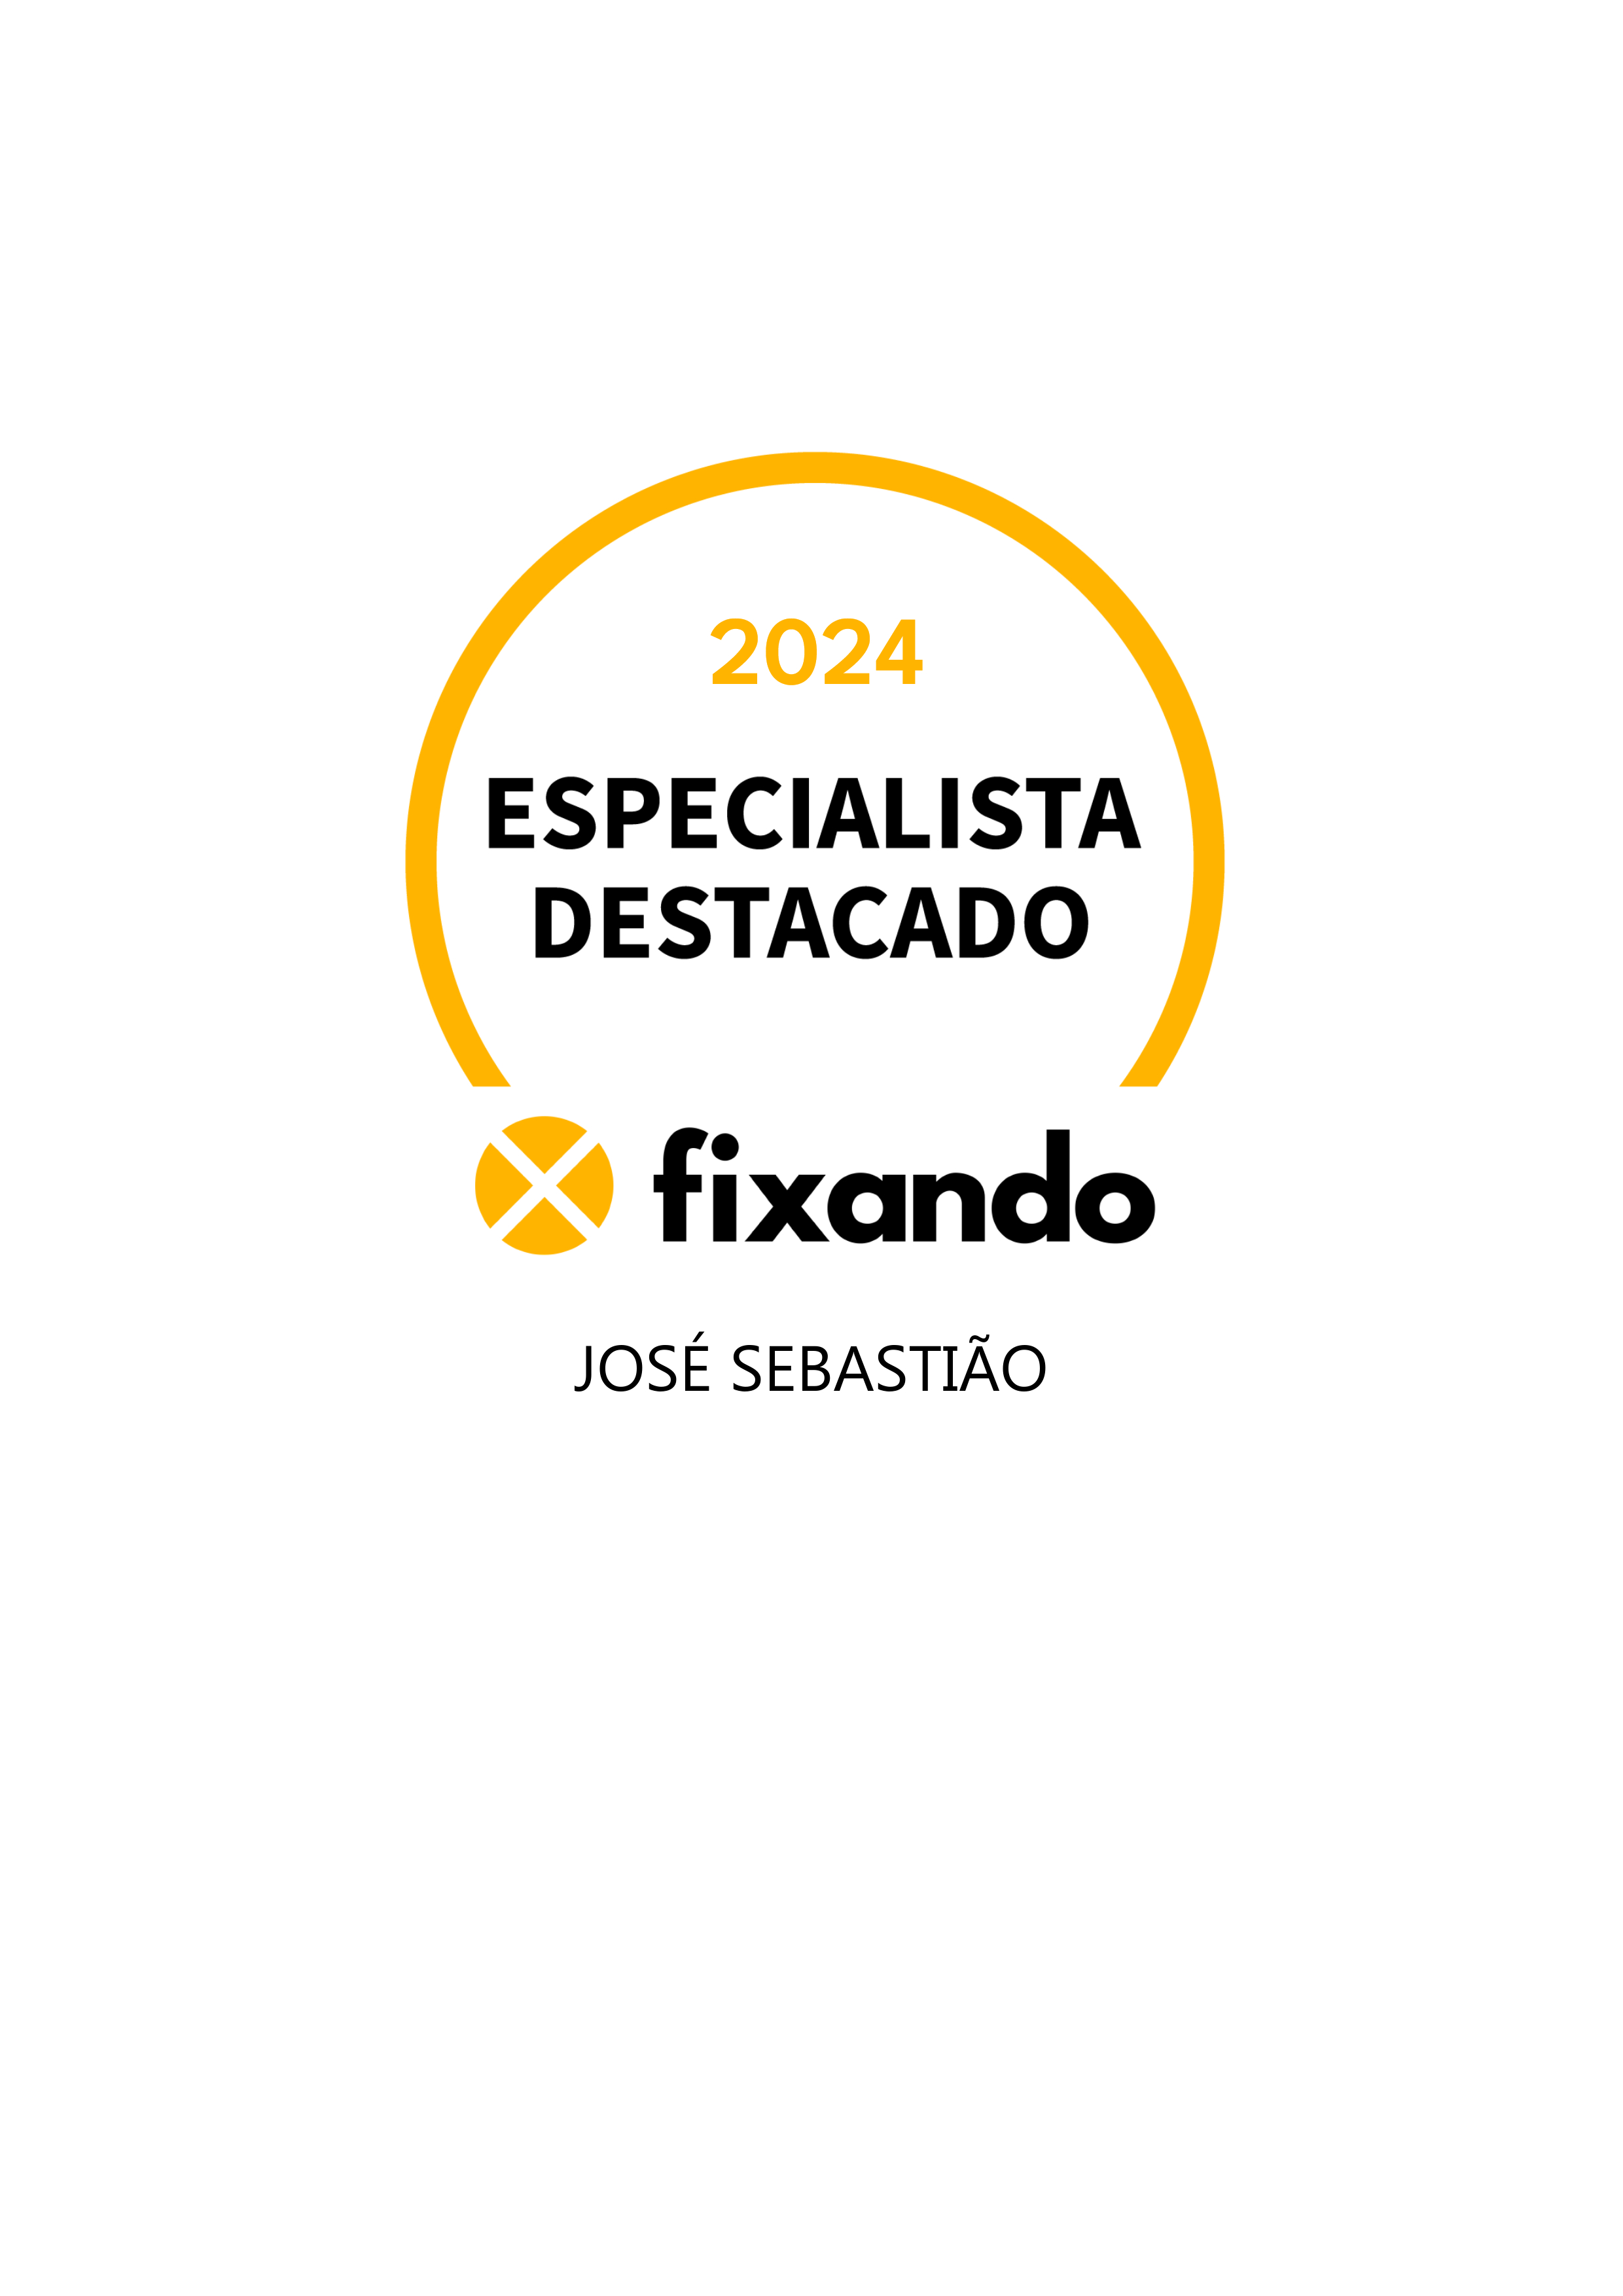 José Sebastião - Lisboa - Telemarketing e Televendas